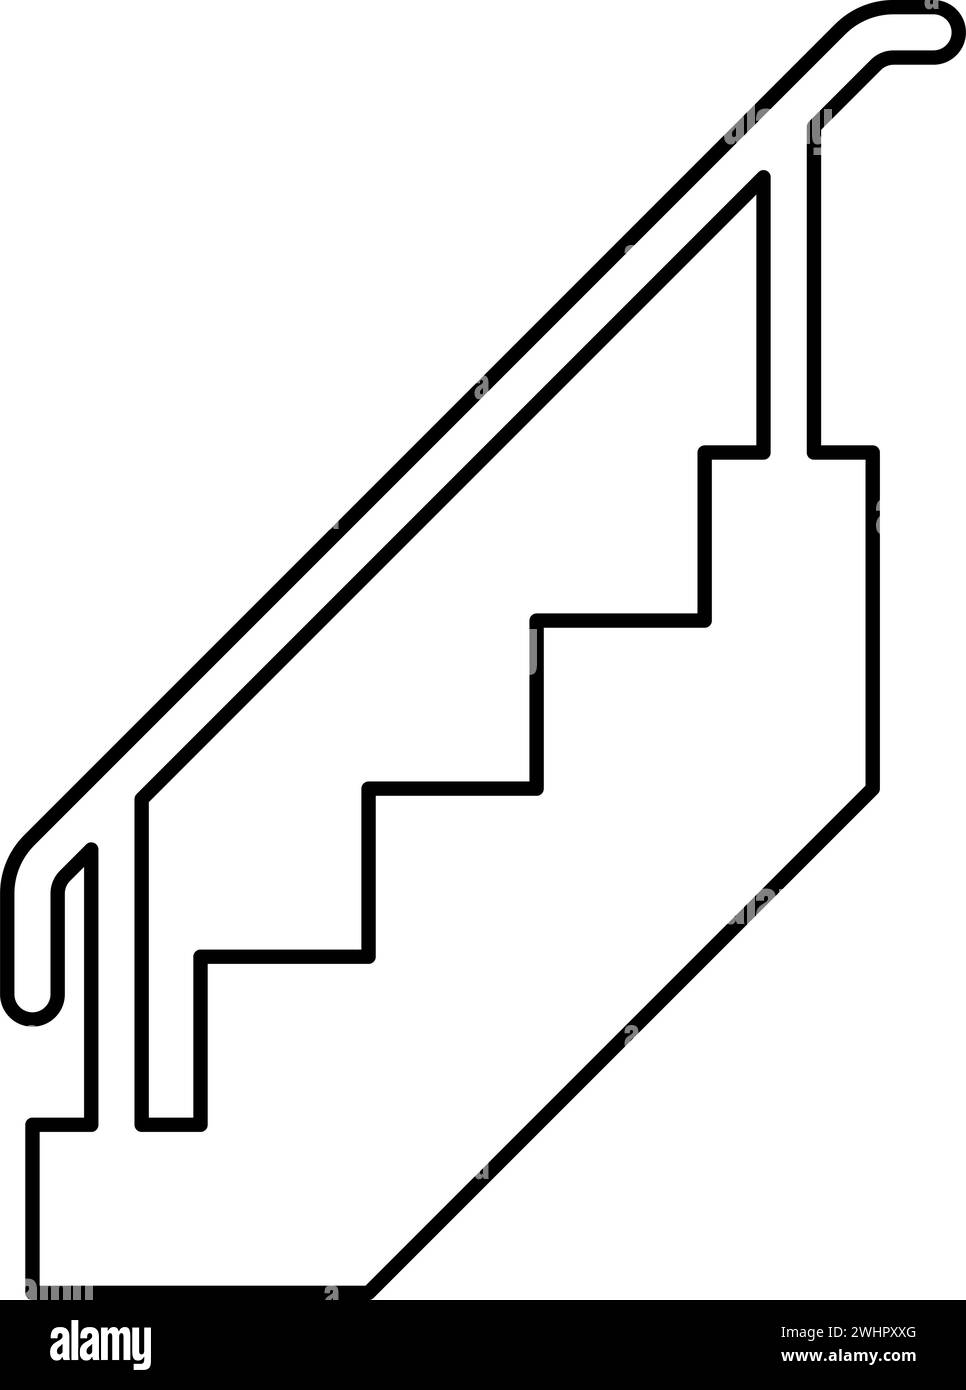 Treppe mit Geländer Treppe mit Handlauf Leiter Zaun Treppenkontur Umrisslinie Symbol schwarze Farbe Vektor Illustration Bild dünne flache Art Stock Vektor